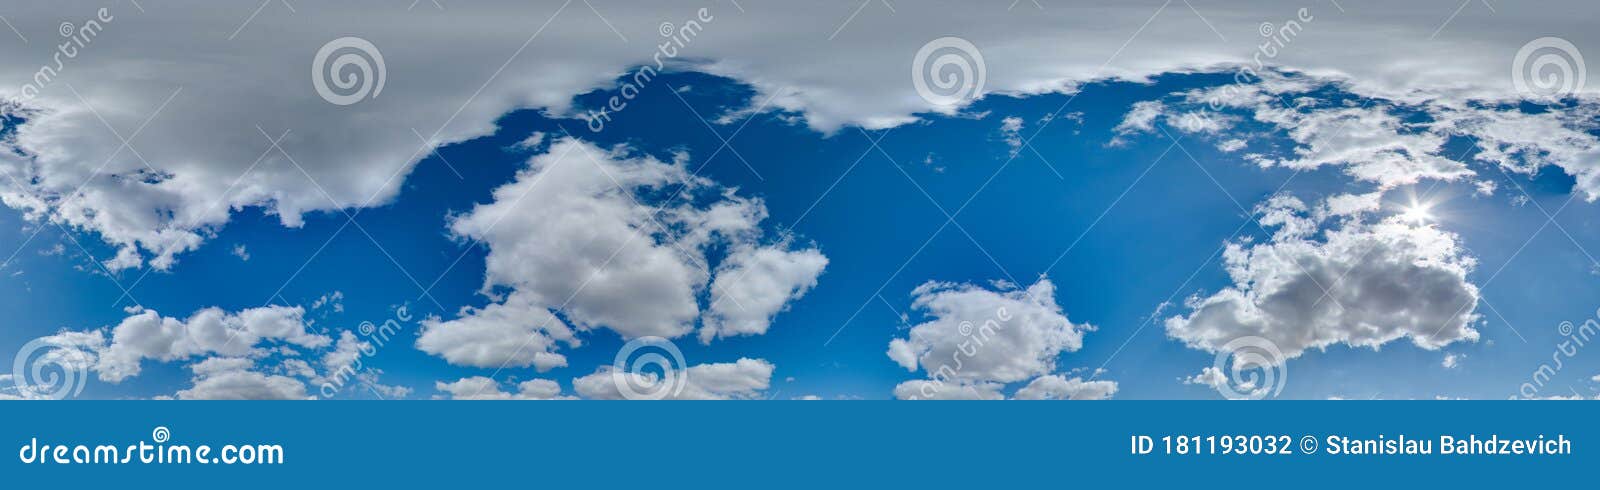 Bầu trời 360 với đám mây và mặt trời là món quà tuyệt vời dành cho những tín đồ yêu thiên nhiên và nhiếp ảnh. Bức ảnh HDRI với khung cảnh 3D và nền trời xanh sẽ khiến bạn cảm thấy như đang đi du ngoạn giữa thiên đường.